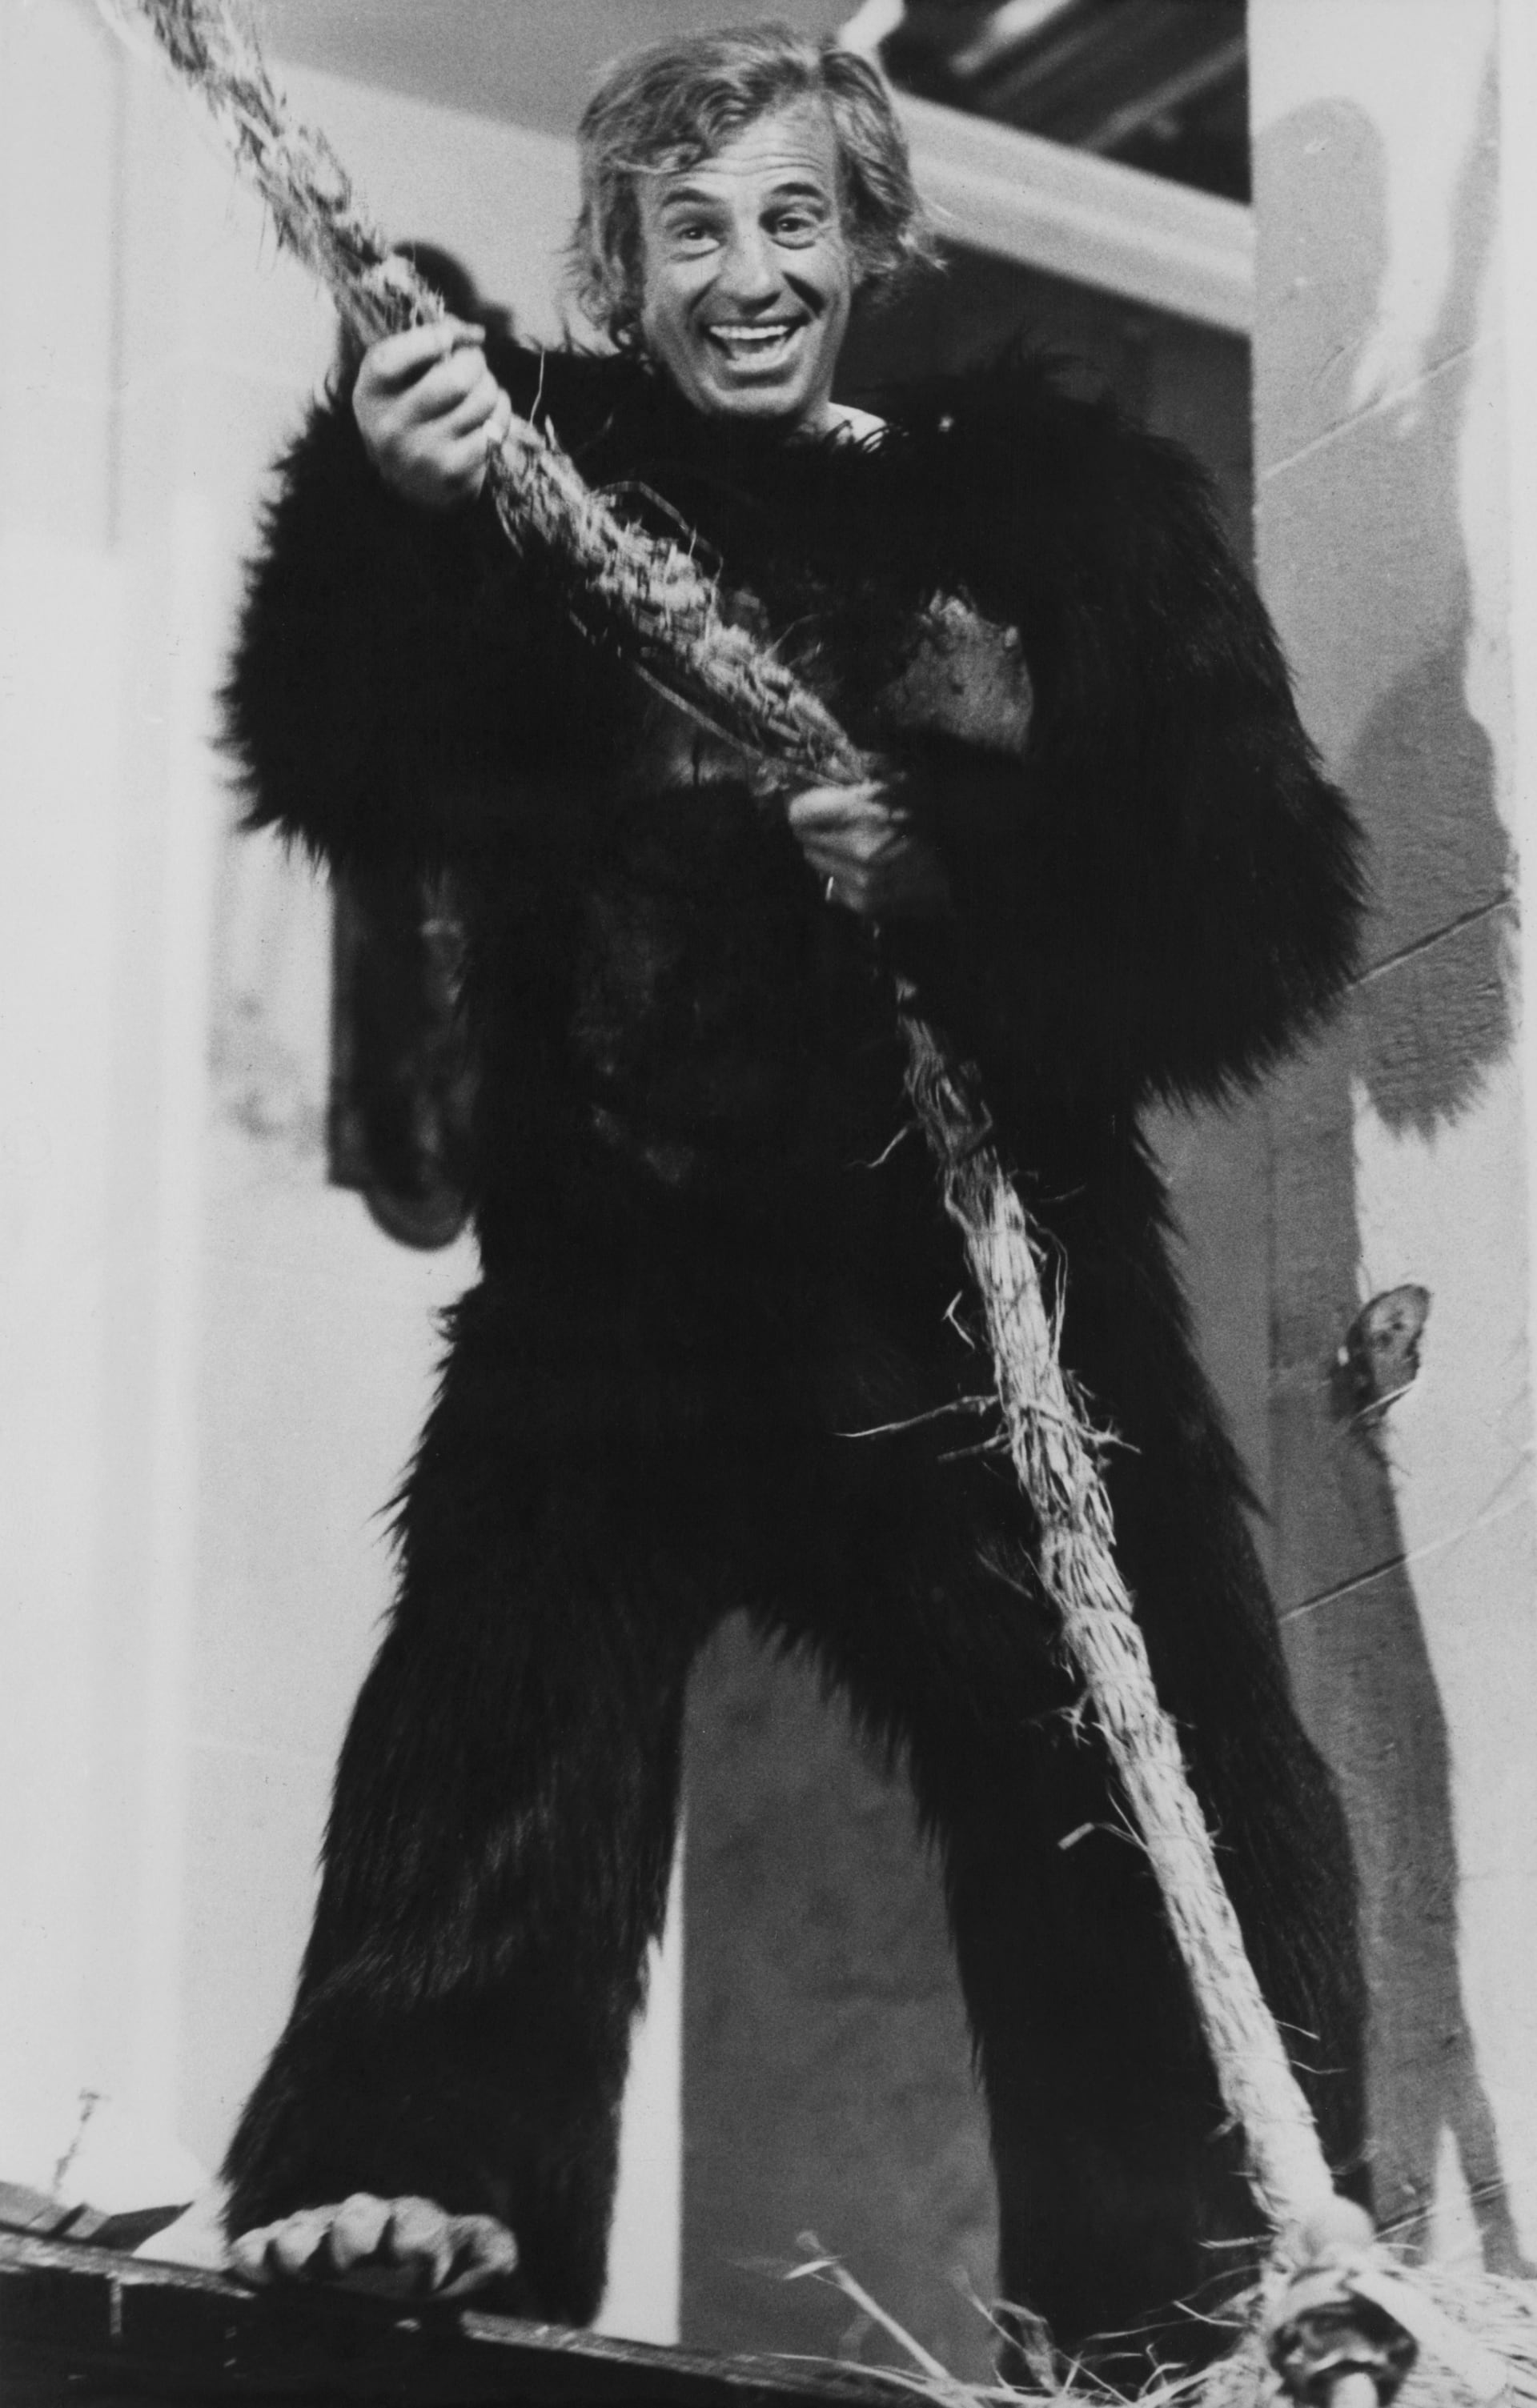 Belmondo ve snímku Zvíře z roku 1977.